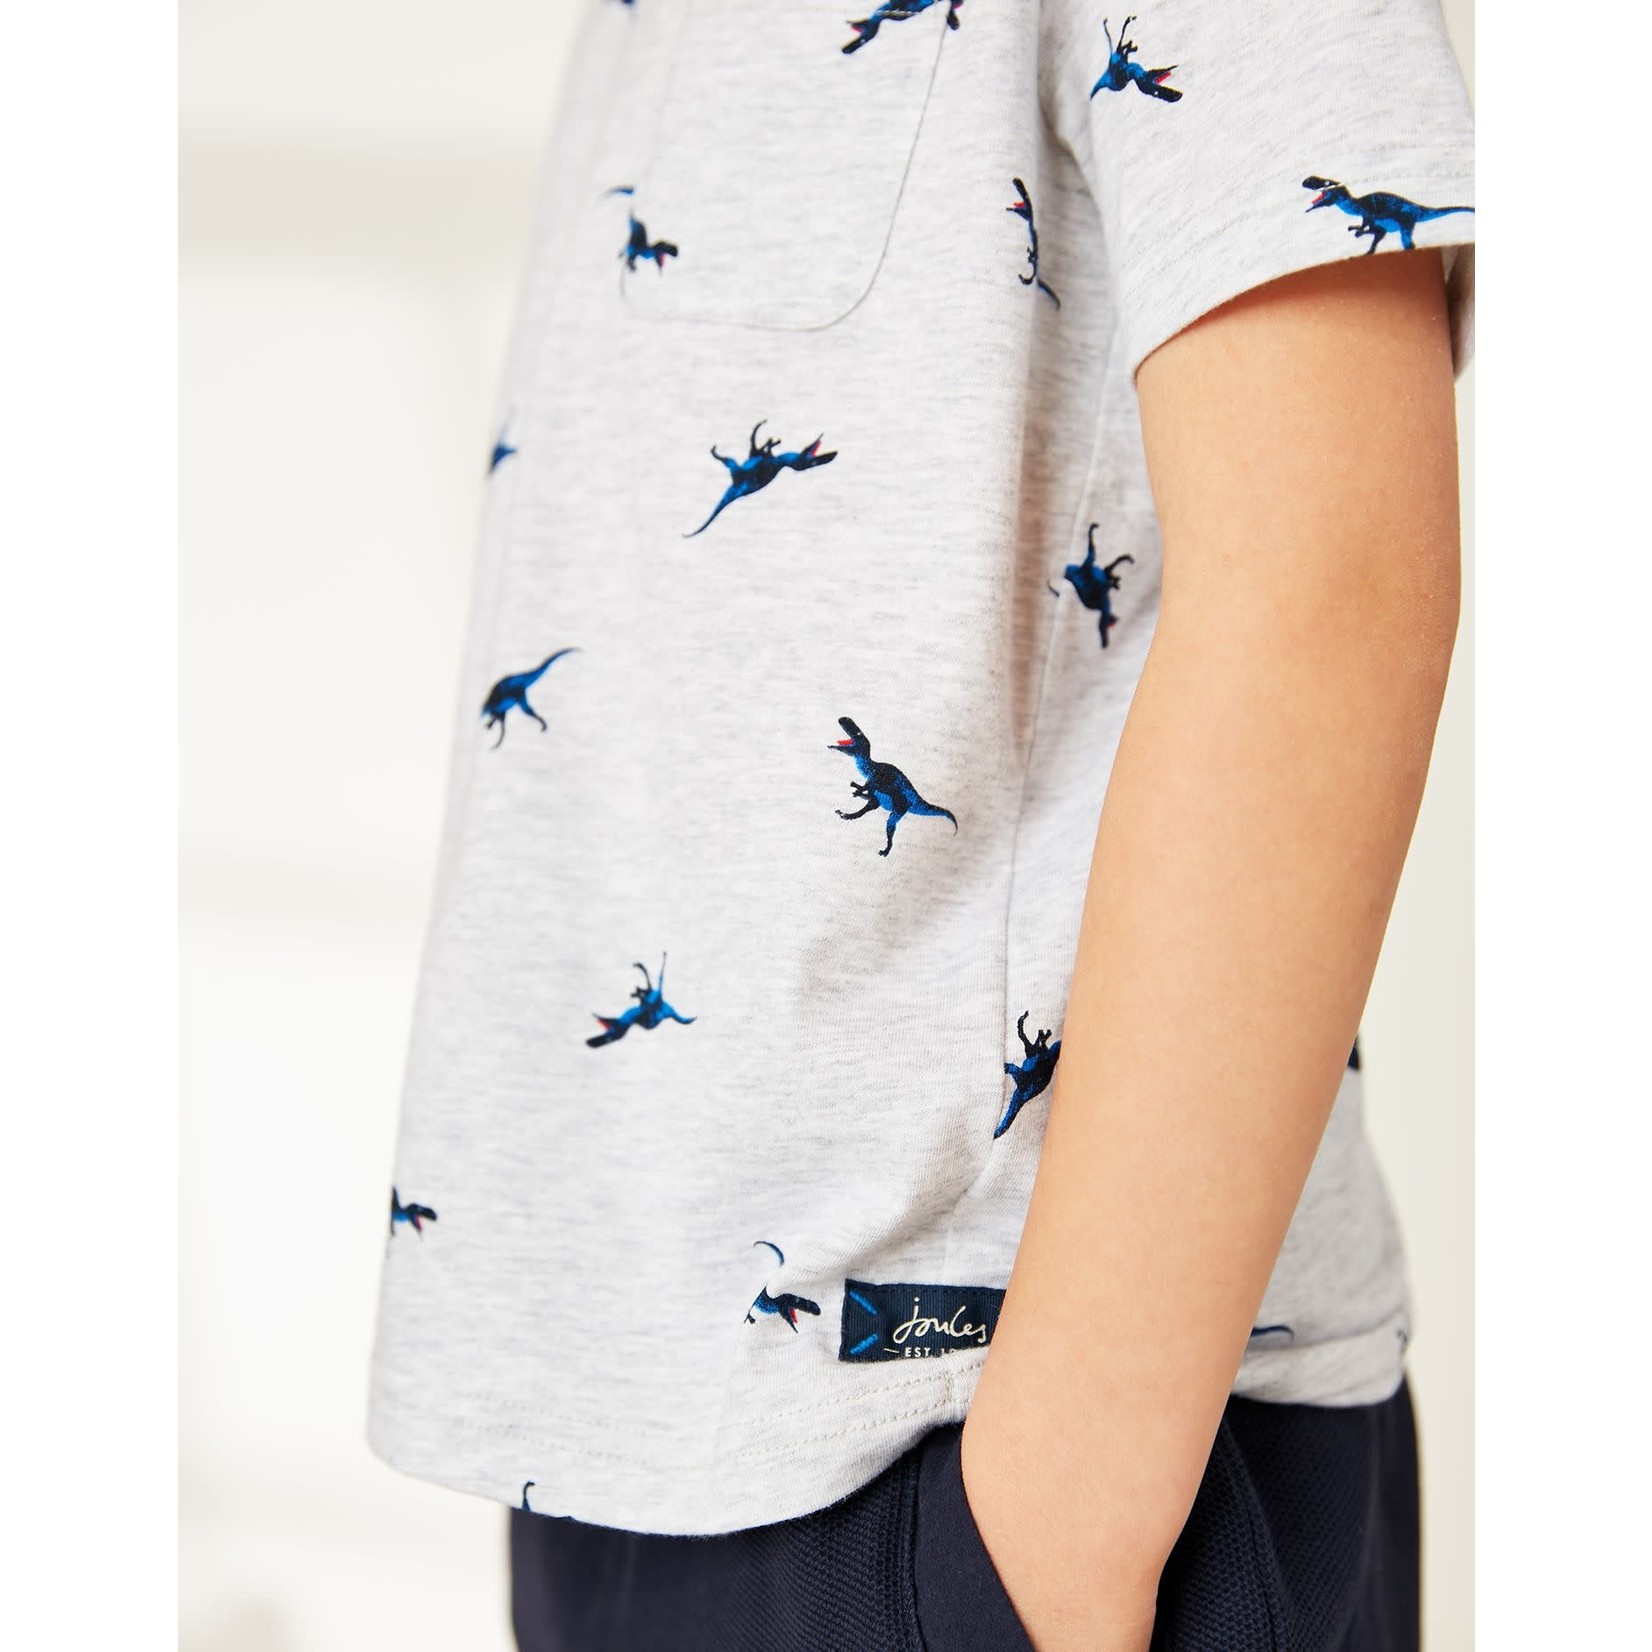 Joules JOULES - T-Shirt gris chiné avec imprimé de dinosaures 'Olly'